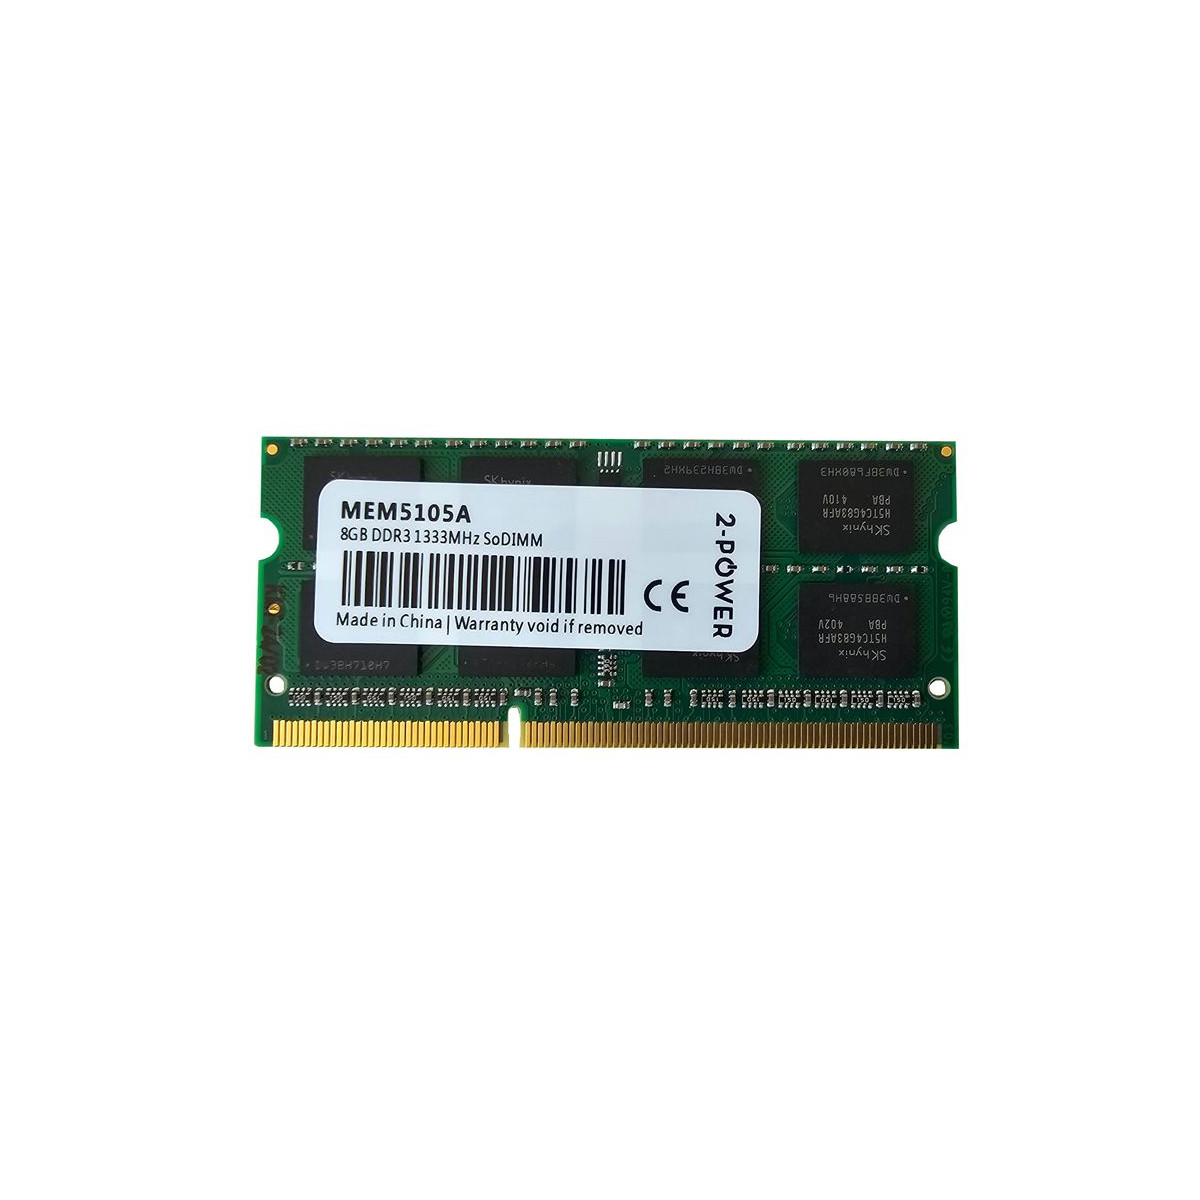 PAMIEC 2-POWER 8GB SODIMM PC3-10600S MEM5105A